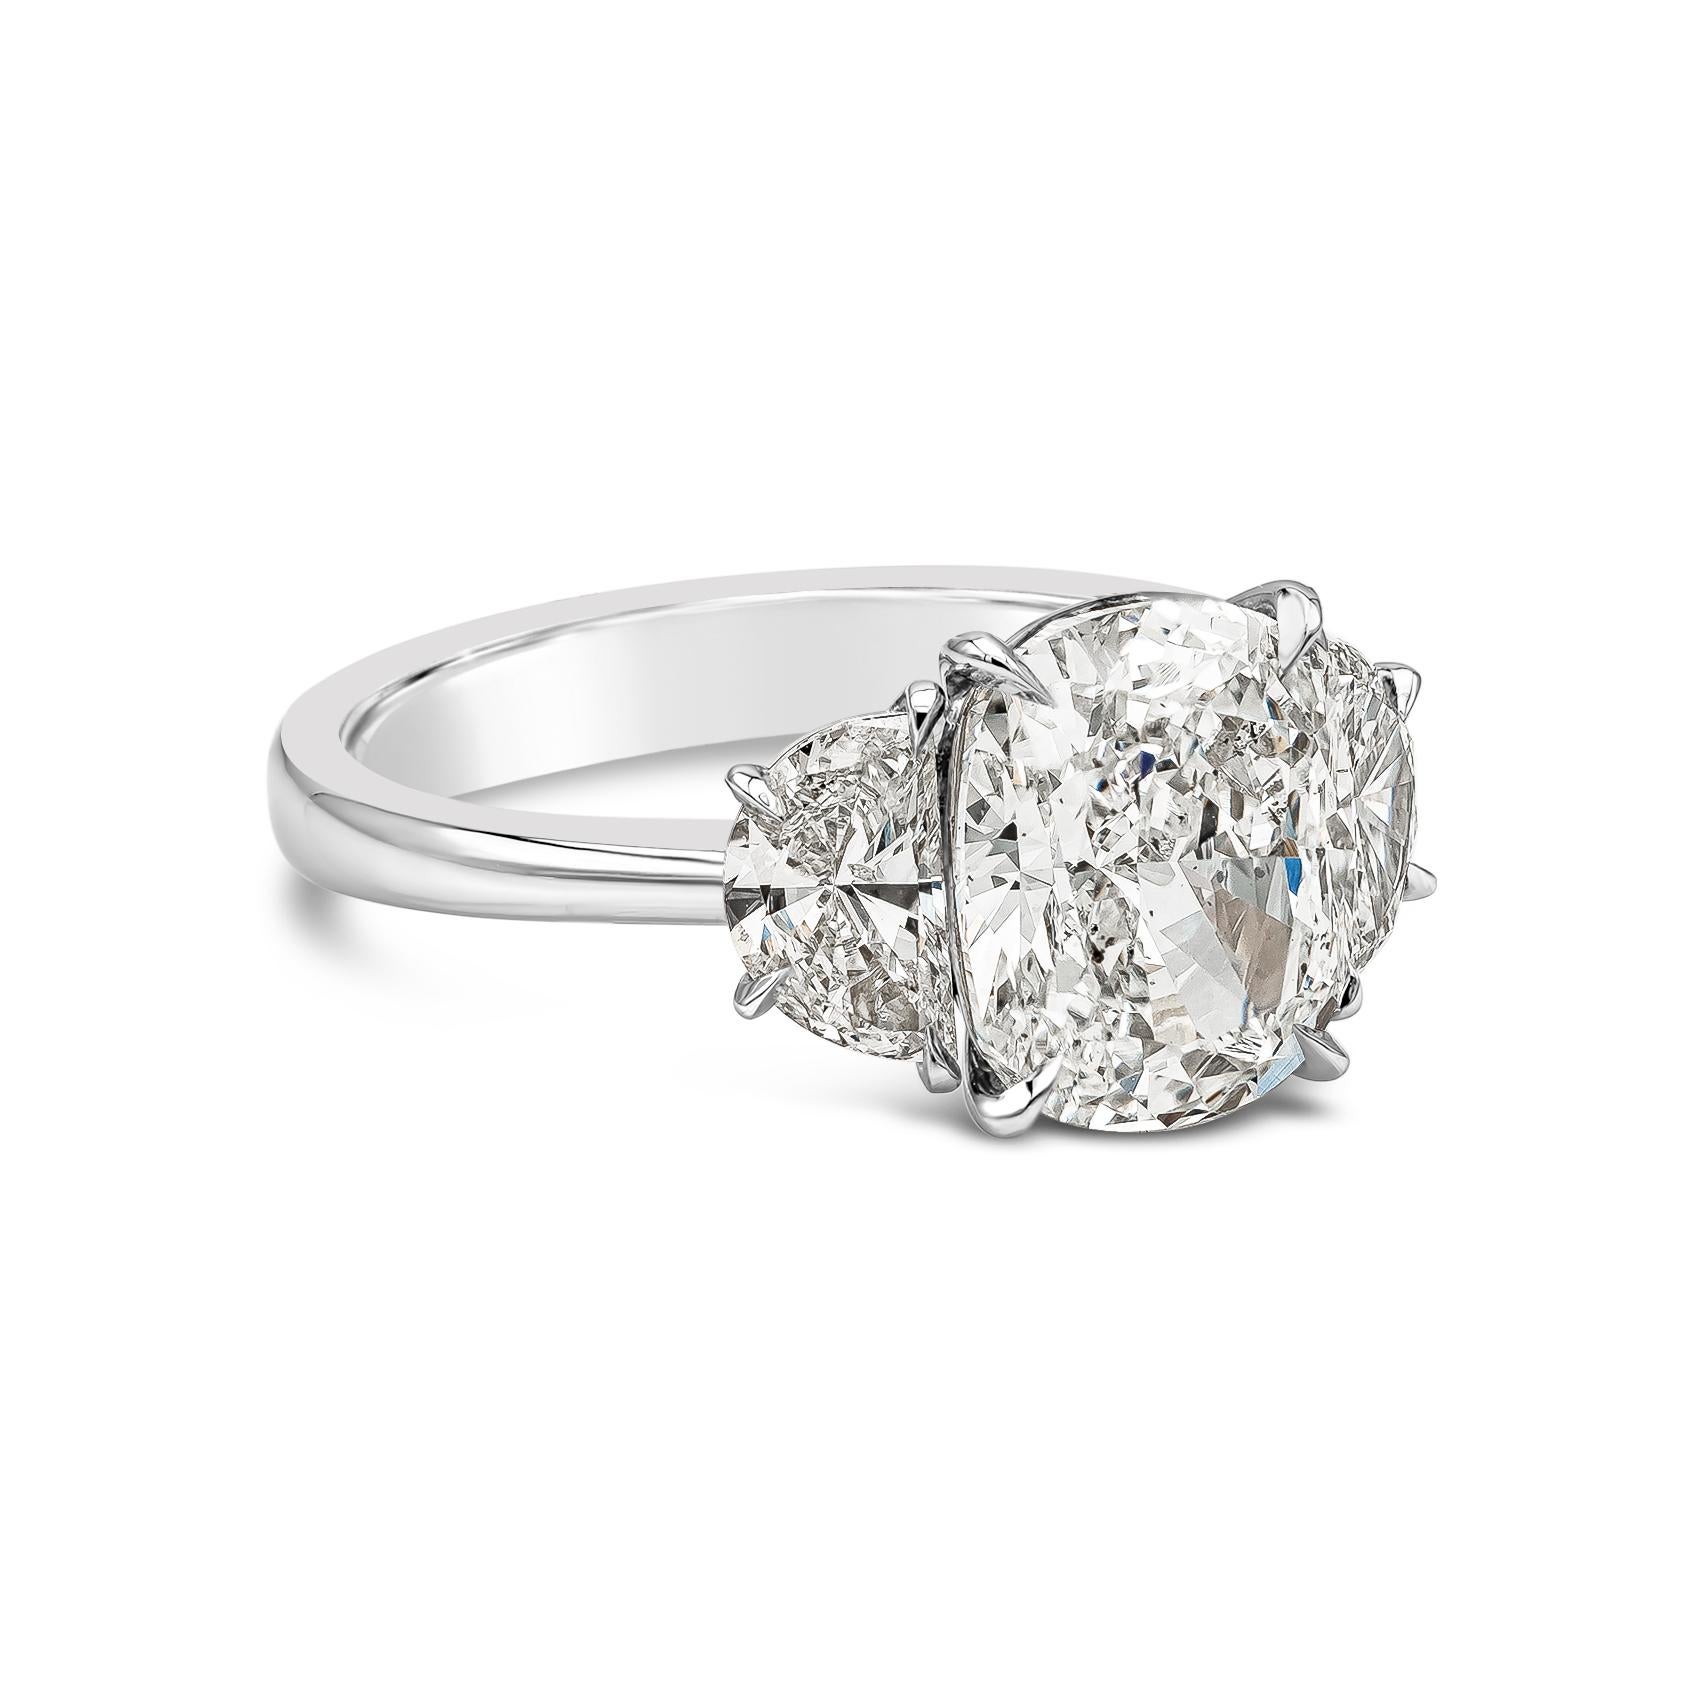 Une magnifique bague de fiançailles, mettant en valeur un diamant brillant de 3,11 carats de taille coussin certifié par le GIA de couleur H et de pureté SI1, accentué par deux diamants demi-lune brillants pesant 0,90 carats au total. Serti dans une